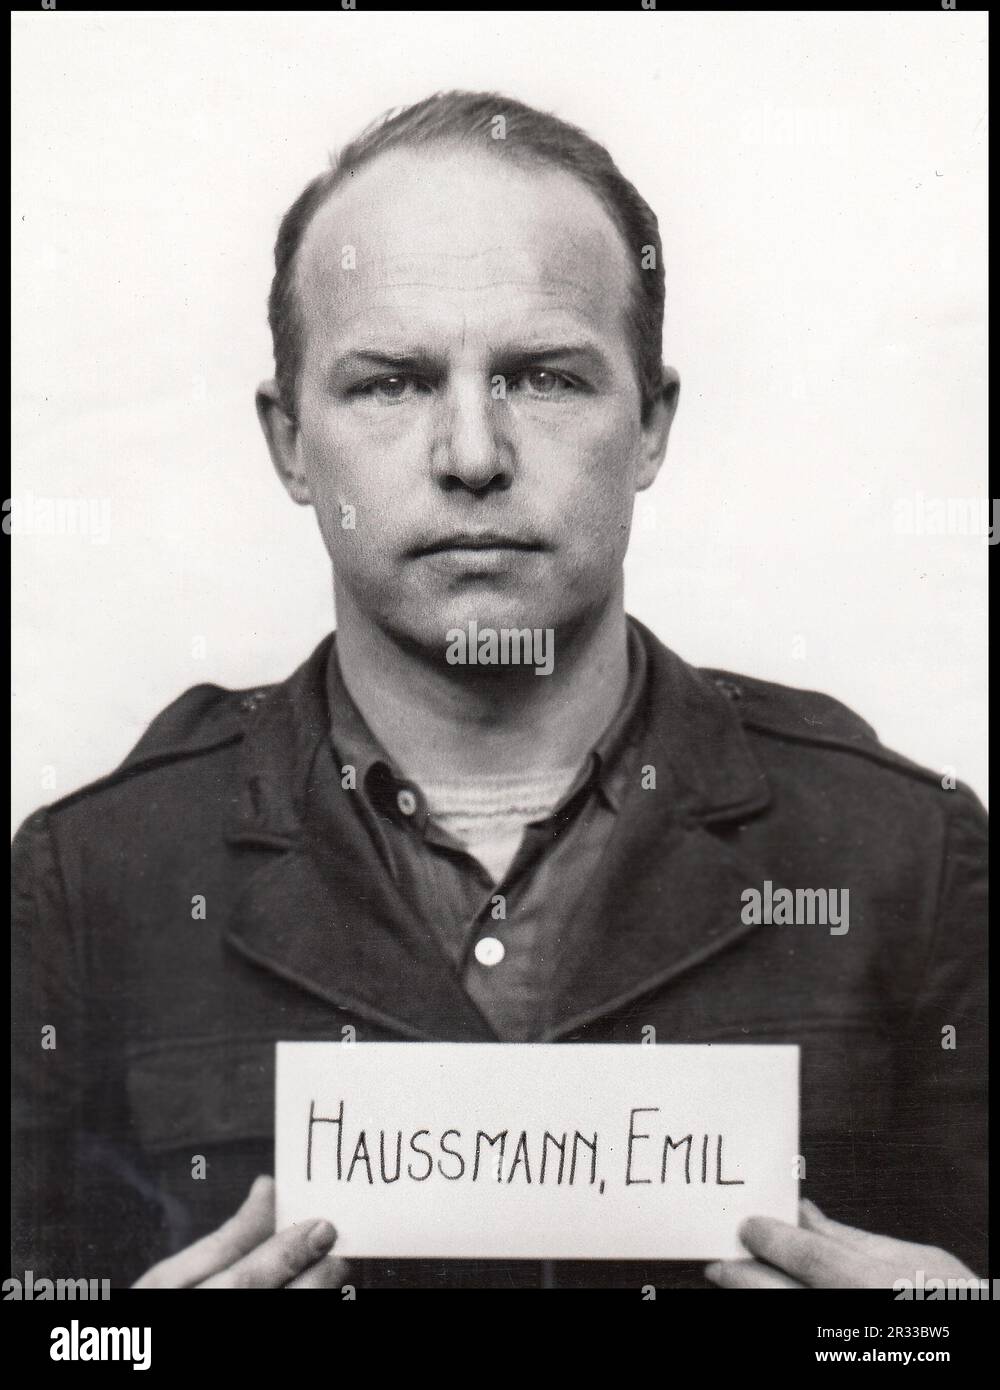 PROCESSI DI NORIMBERGA 1947 Emil Haussmann fu un funzionario tedesco delle SS durante l'era nazista. Faceva parte di Einsatzkommando 12 di Einsatzgruppe D, che commise l'olocausto nell'Ucraina occupata. Haussmann fu accusato di crimini contro l'umanità nel 1947 nel processo di Einsatzgruppen. Due giorni dopo l'accusa, Haussmann si suicidò. Nato il 11 ottobre 1910, Ravensburg, Germania morì il 31 luglio 1947, Norimberga, Germania Foto Stock